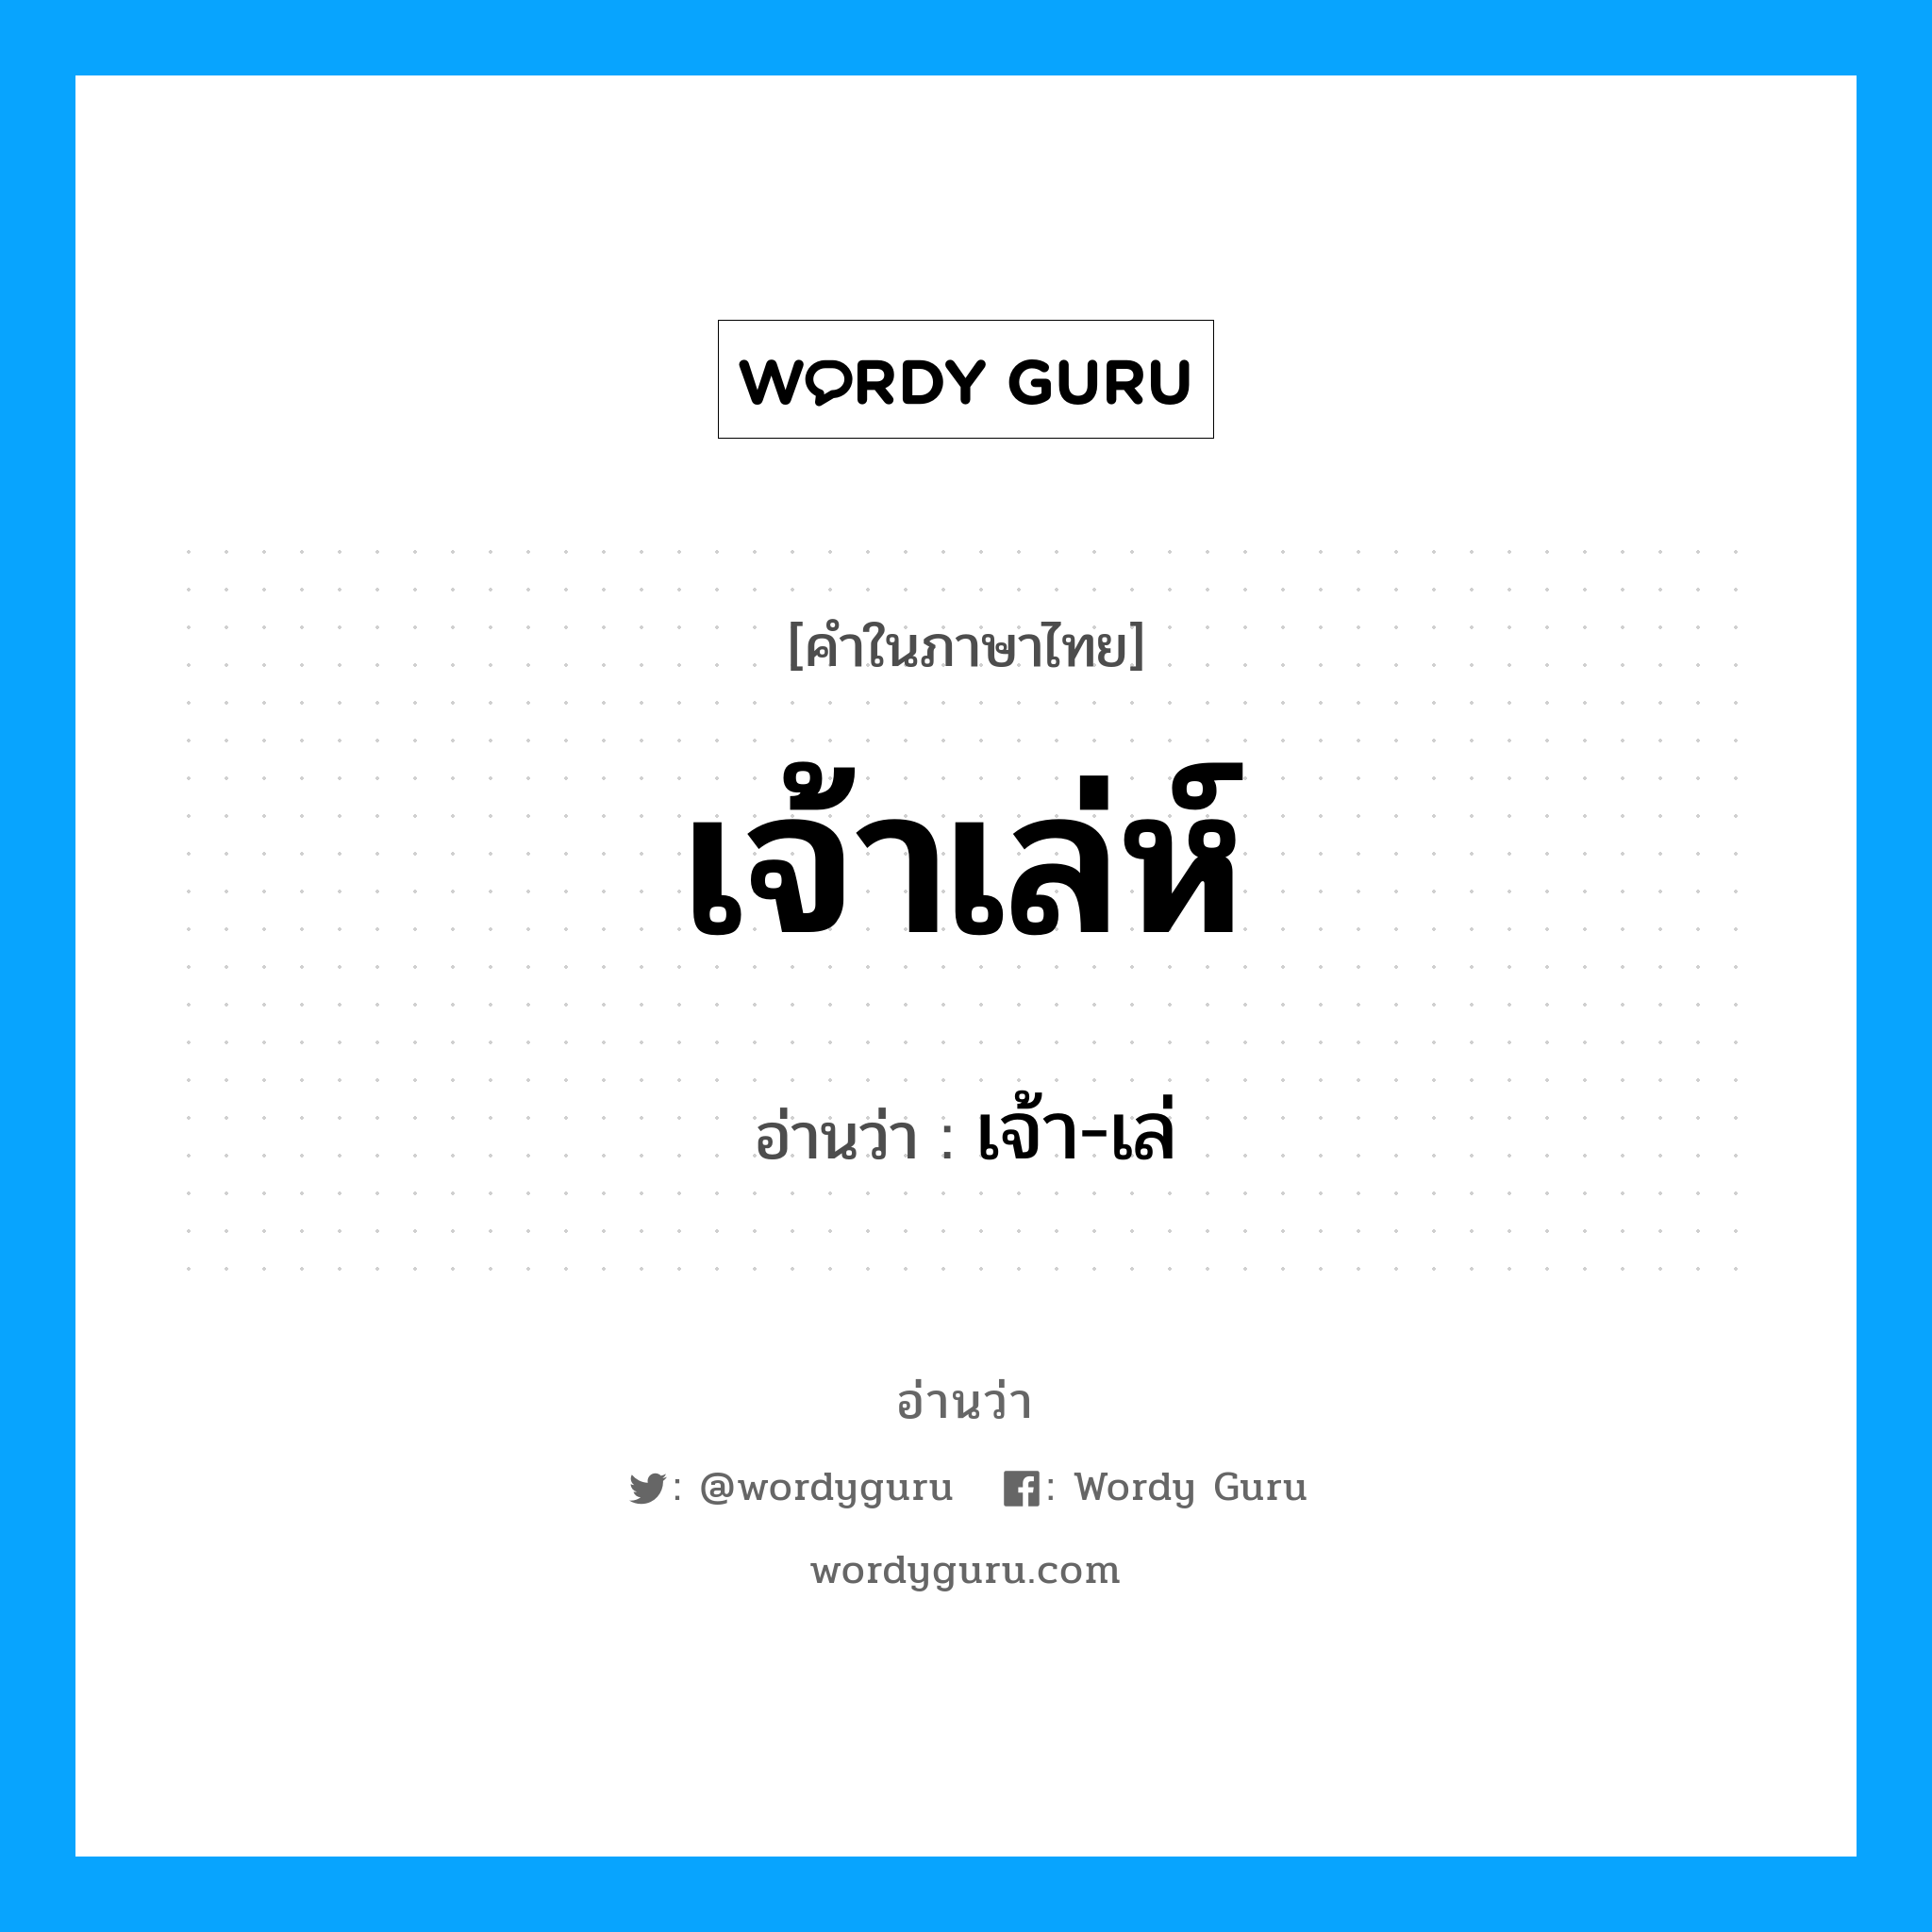 เจ้า-เล่ เป็นคำอ่านของคำไหน?, คำในภาษาไทย เจ้า-เล่ อ่านว่า เจ้าเล่ห์